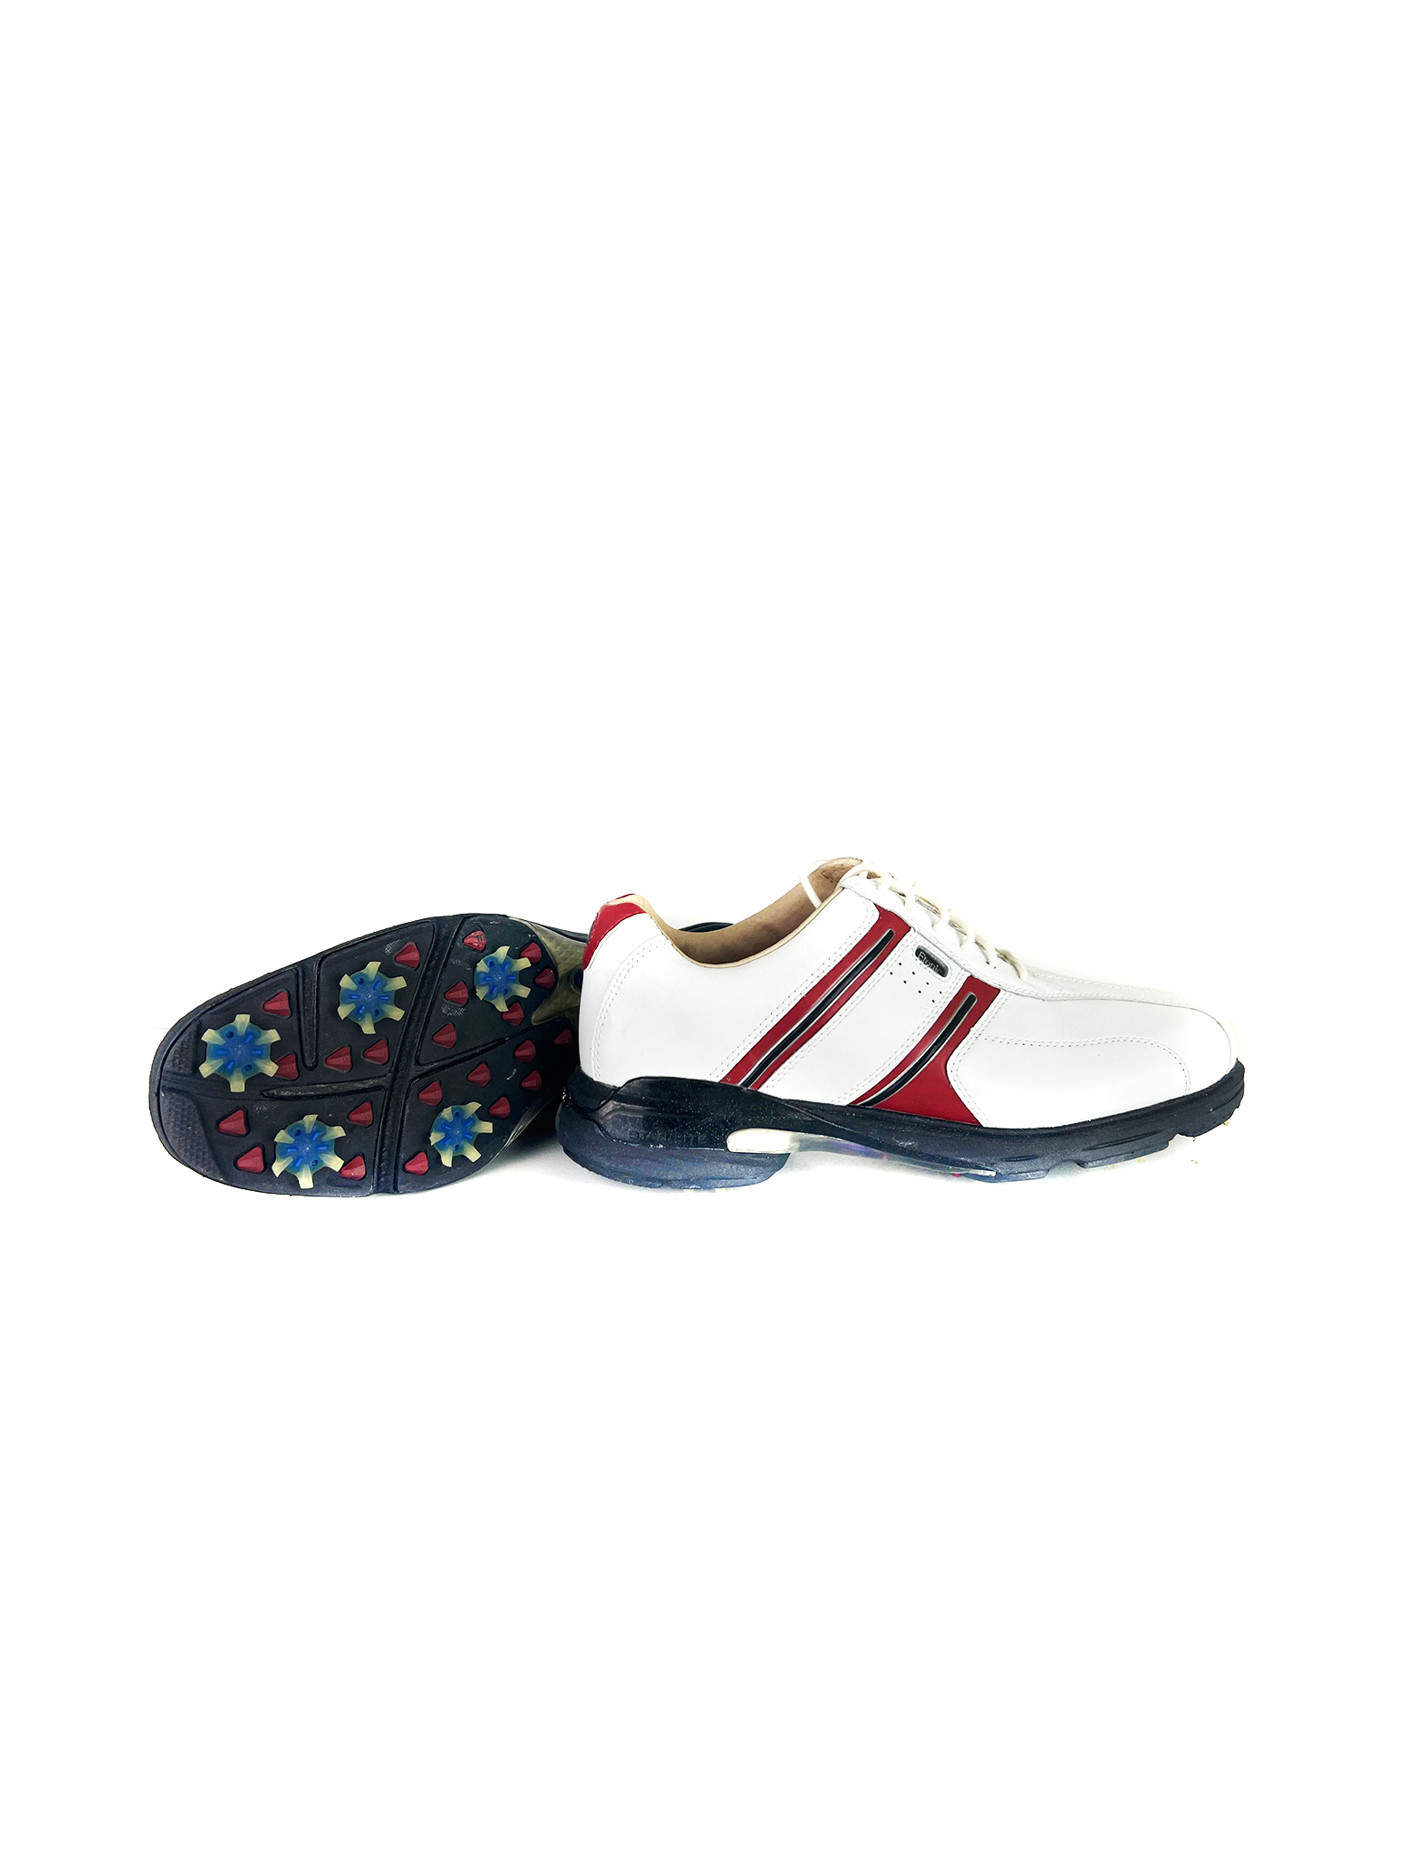 Pánská golfová obuv STABILITES XS EM9107-22 - Etonic bílá-červená-černá 41